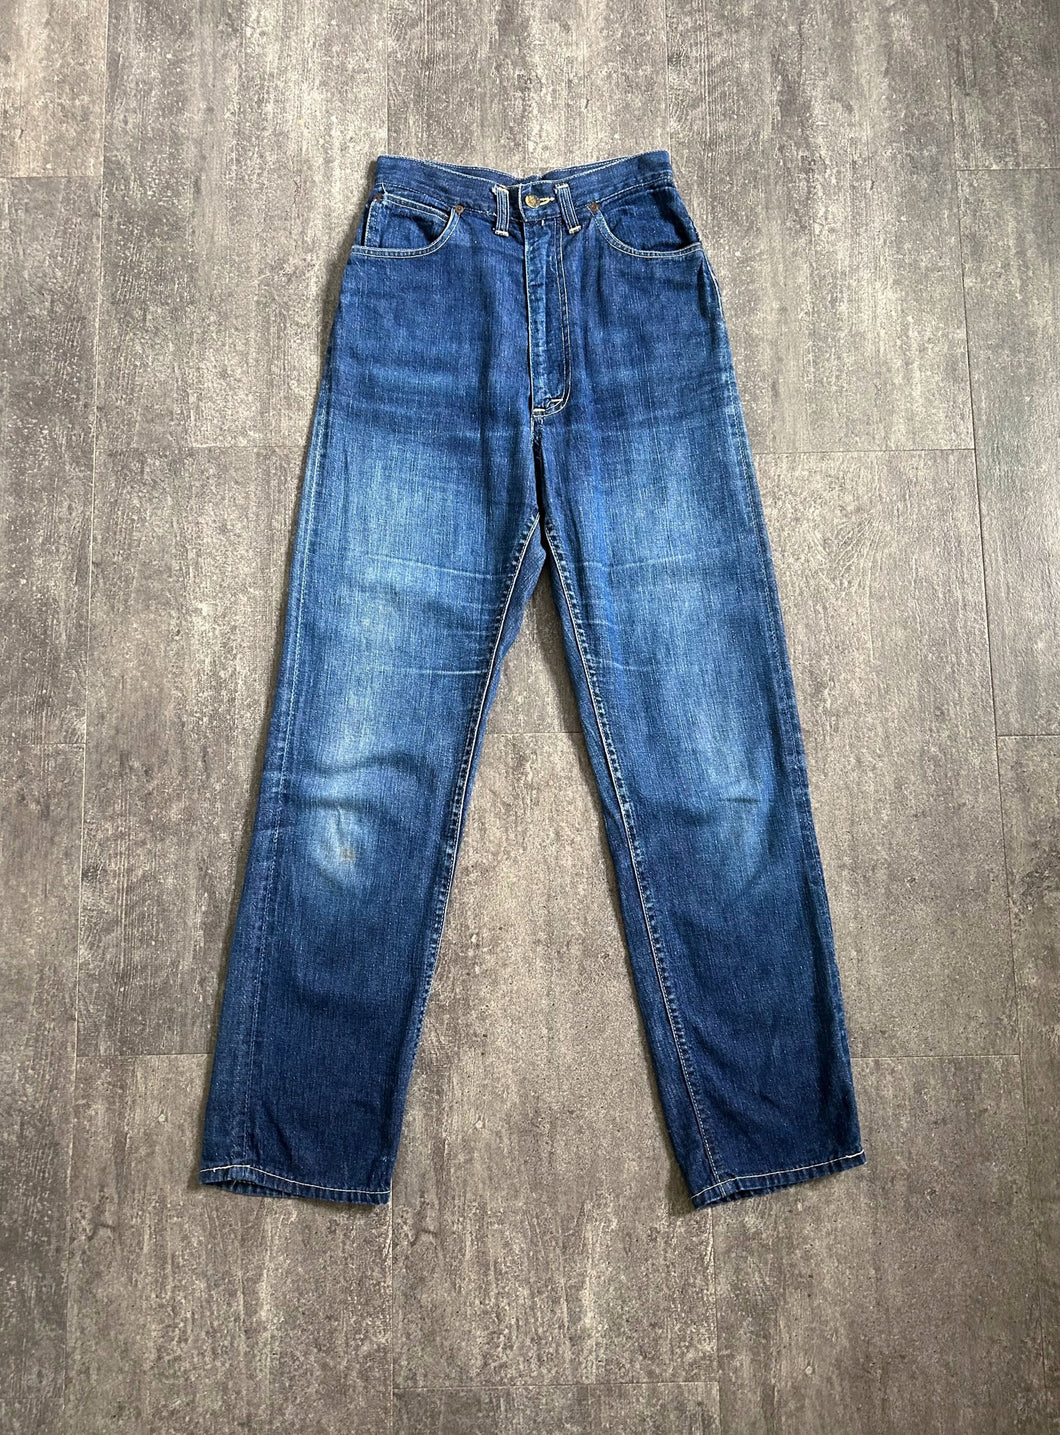 1940s 1950s Lady Lee Riders . vintage denim jeans . 26